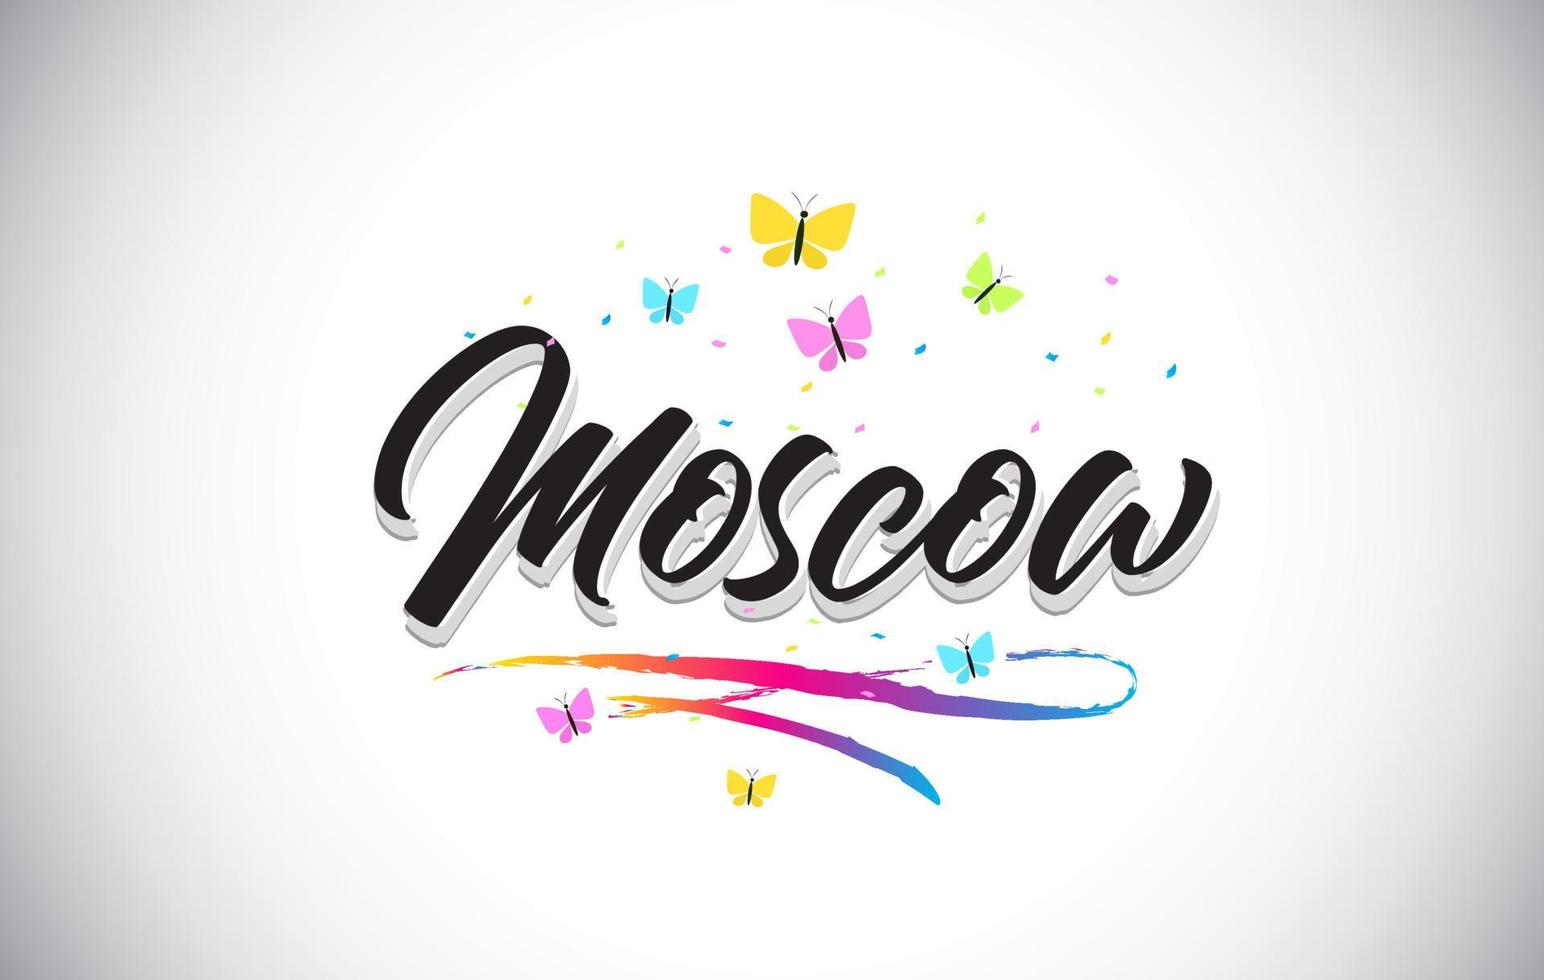 Mosca scritta a mano vettore parola testo con farfalle e swoosh colorato.